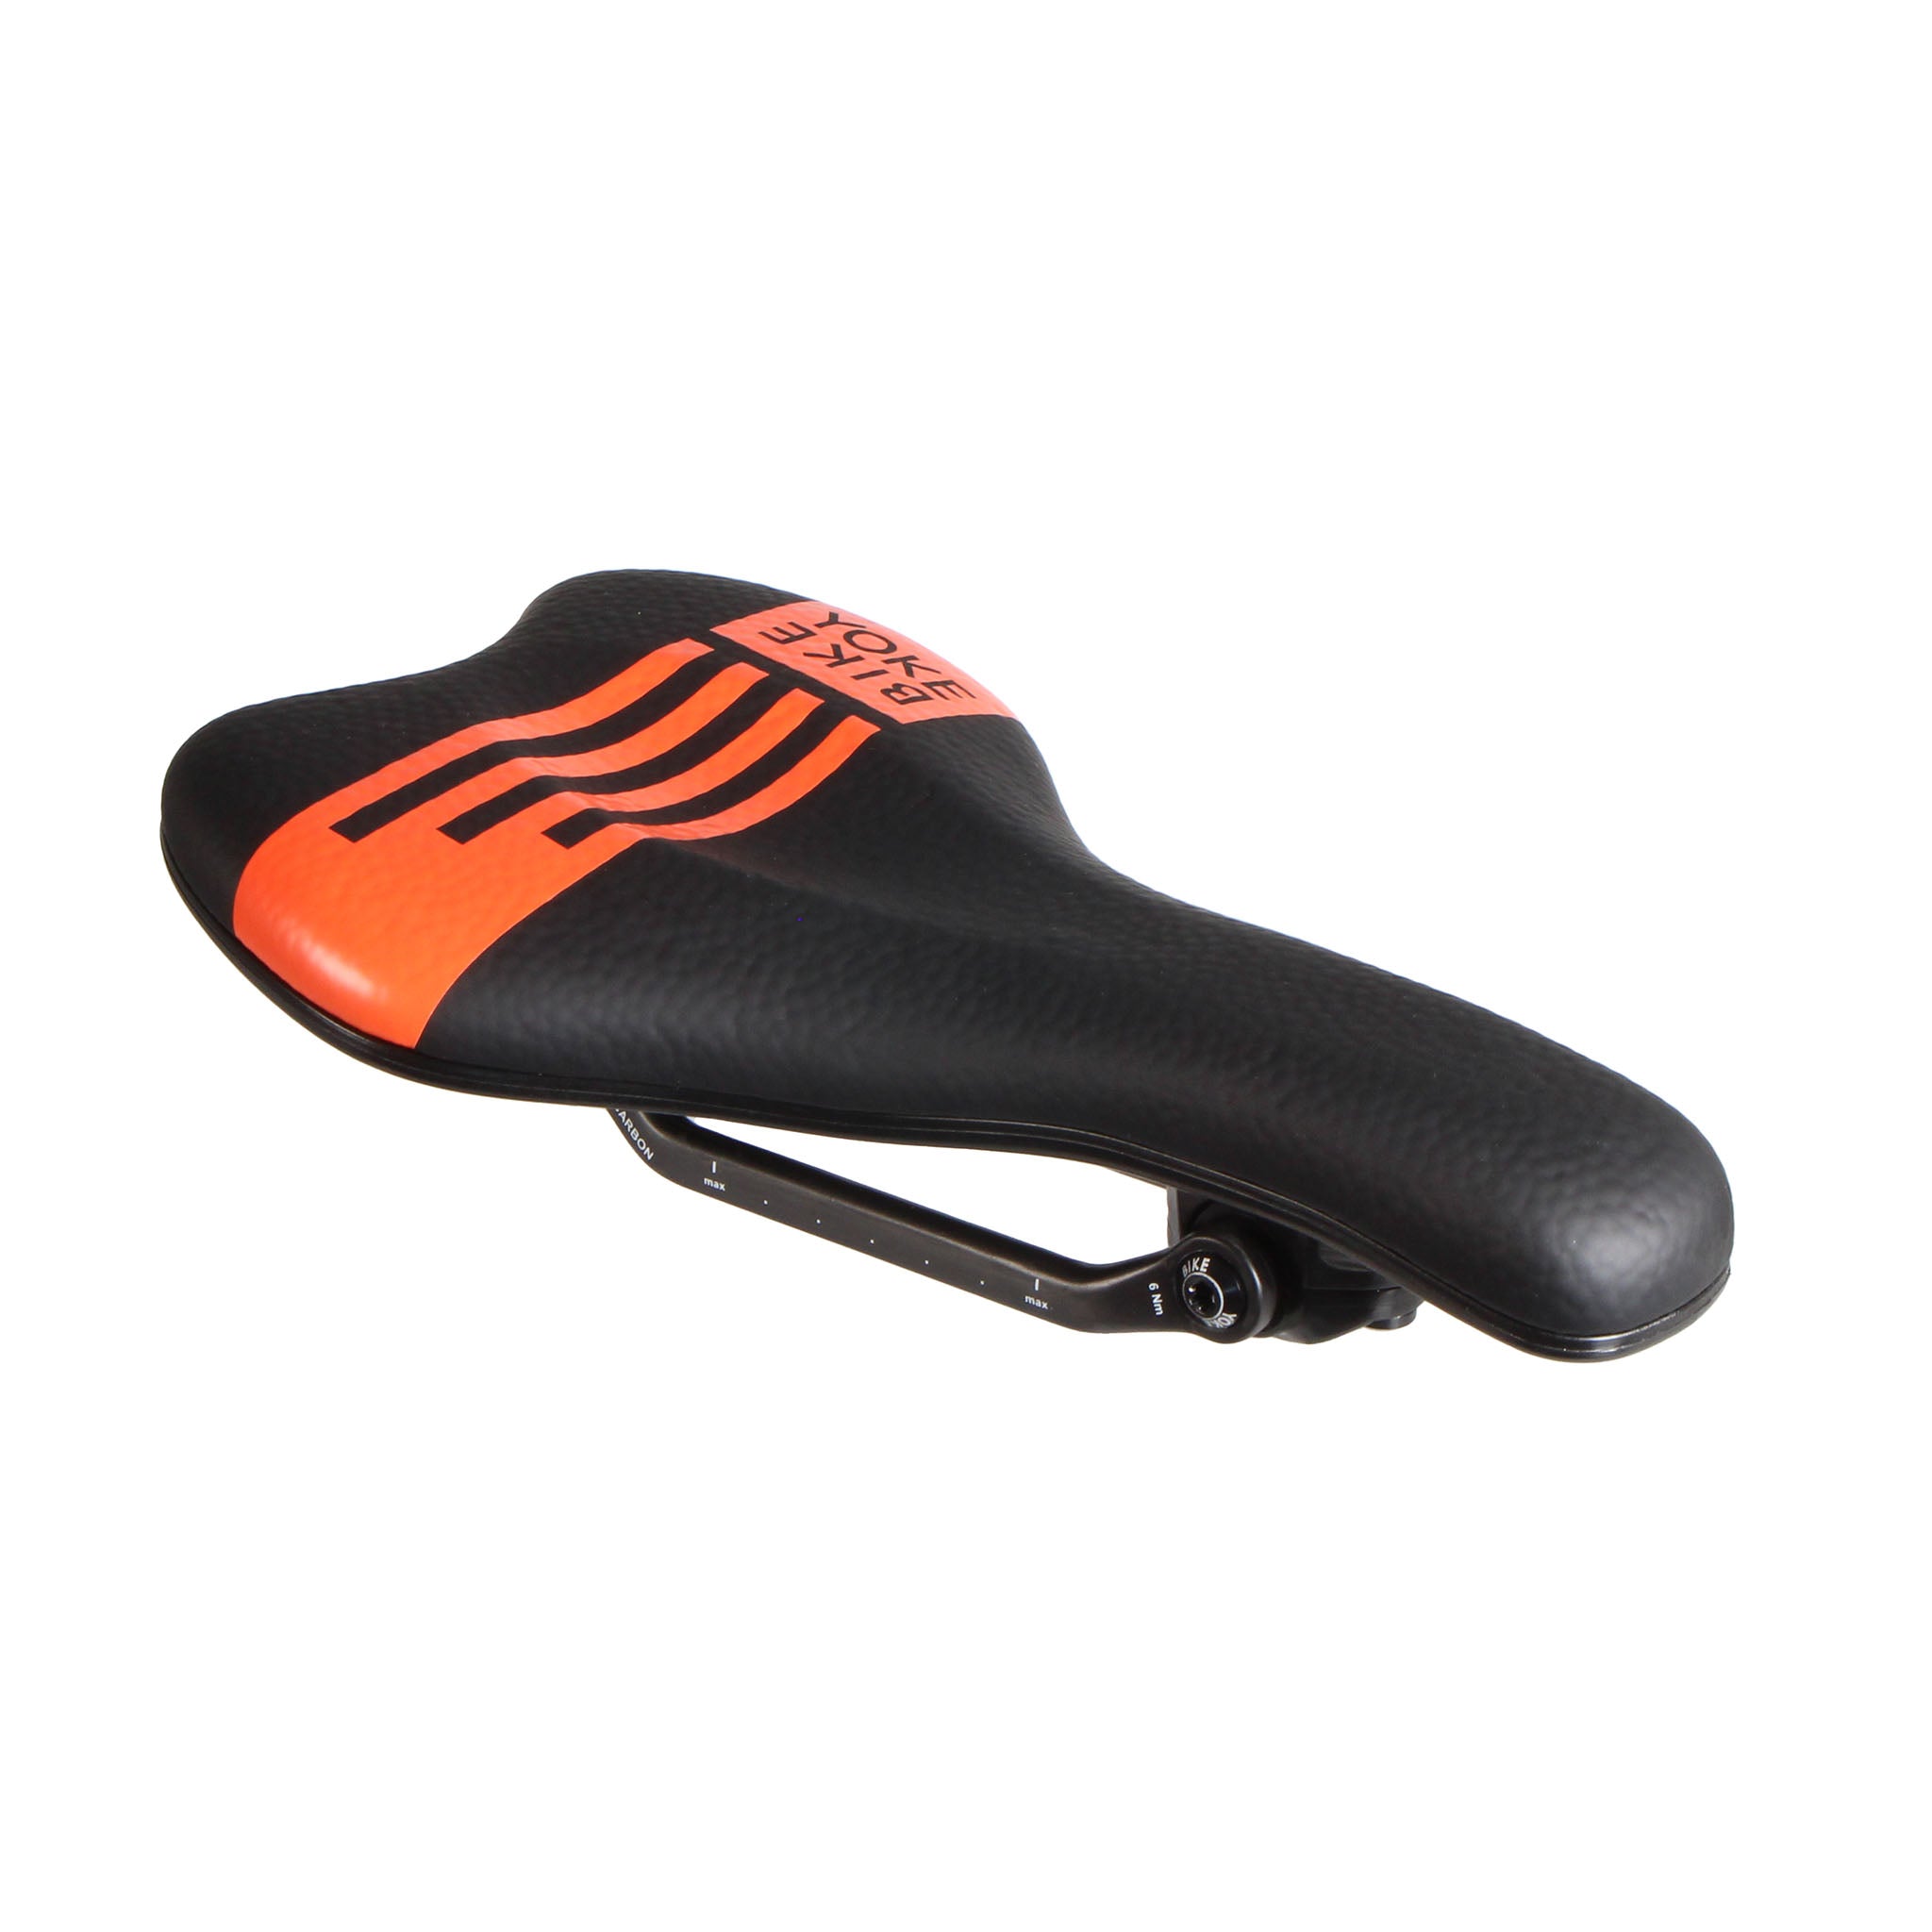 Bike Yoke Sagma Carbon Saddle 142 - Black/Orange